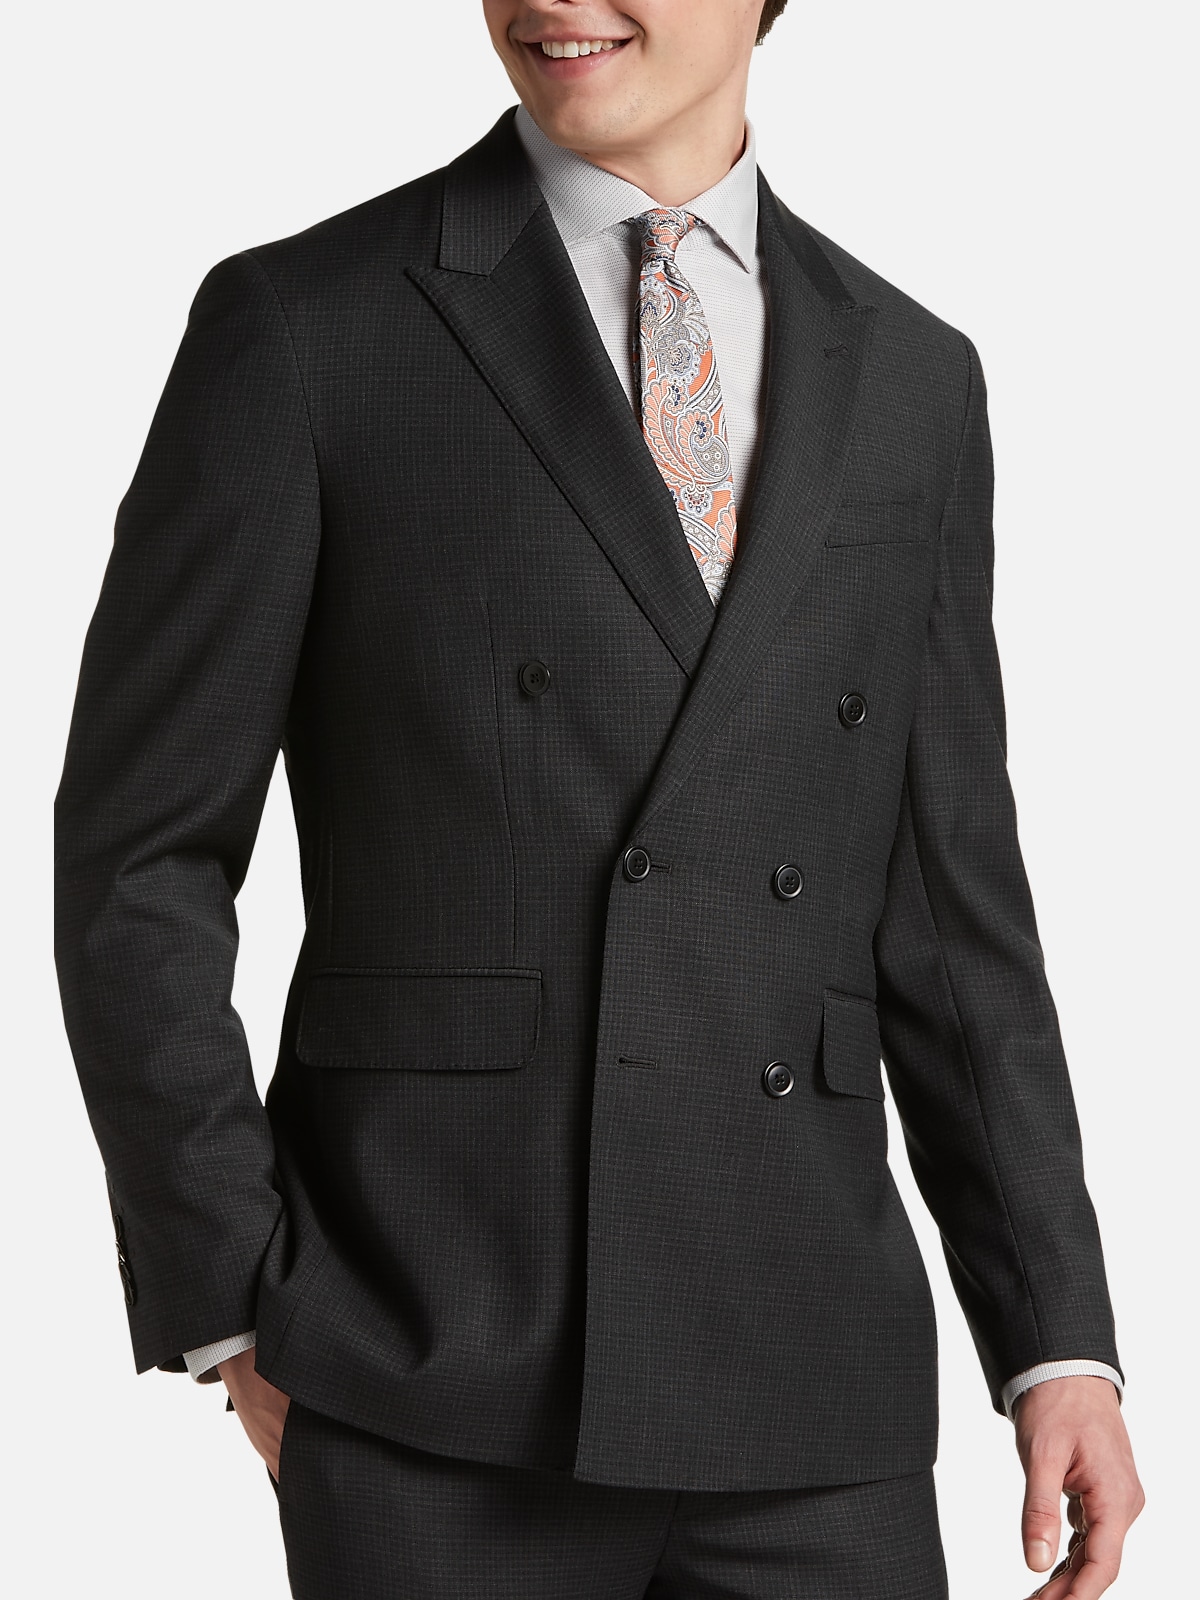 Joe's Men's Two-Button Camo Jacket Slim Fit Mens 2 Button Suit